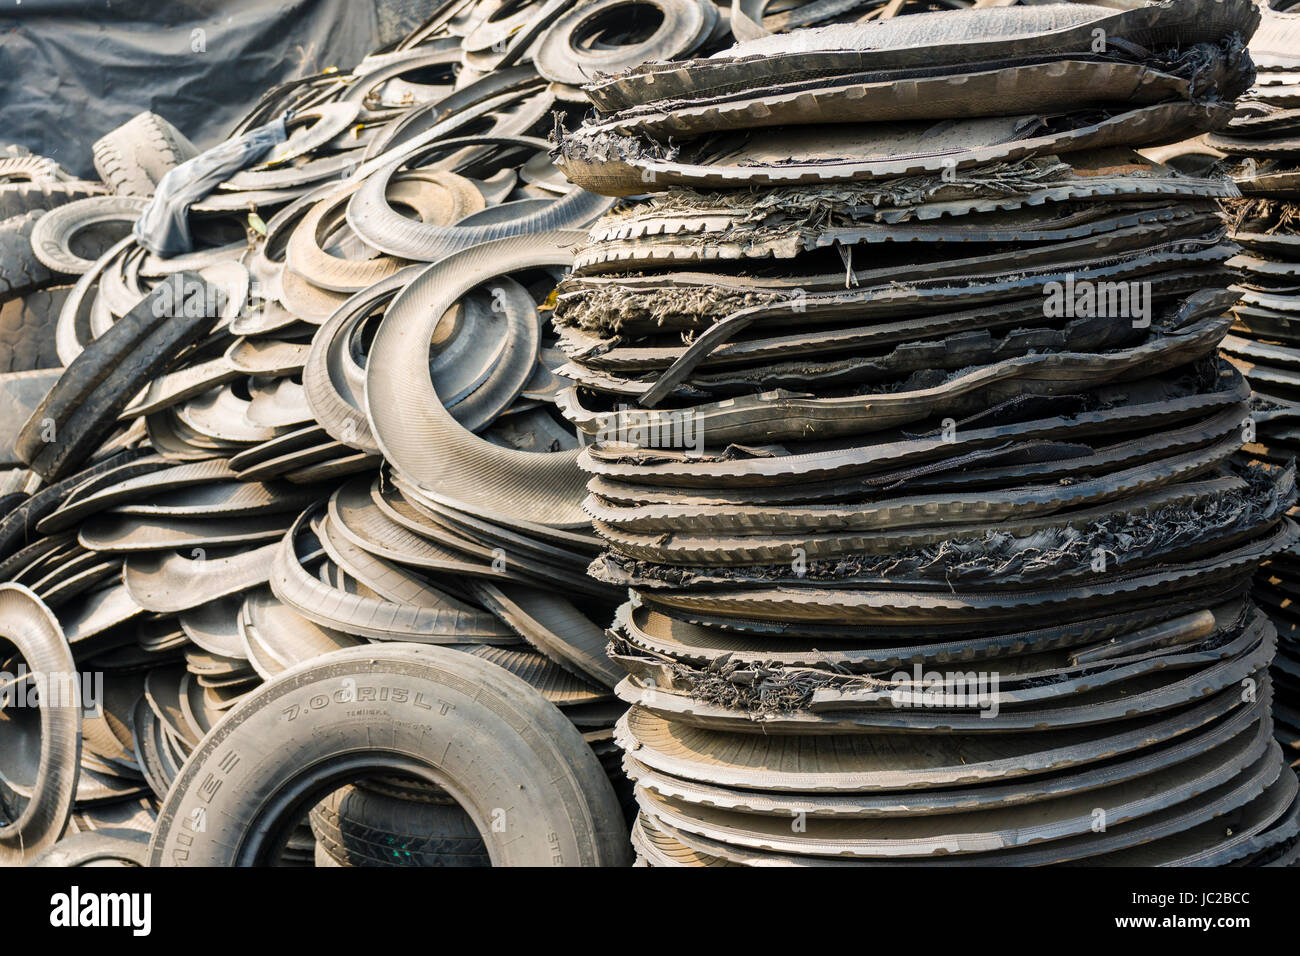 Recyclingfähige Materialien aus Gummi von LKW-Reifen in dhapa Müllhalde Stockfoto